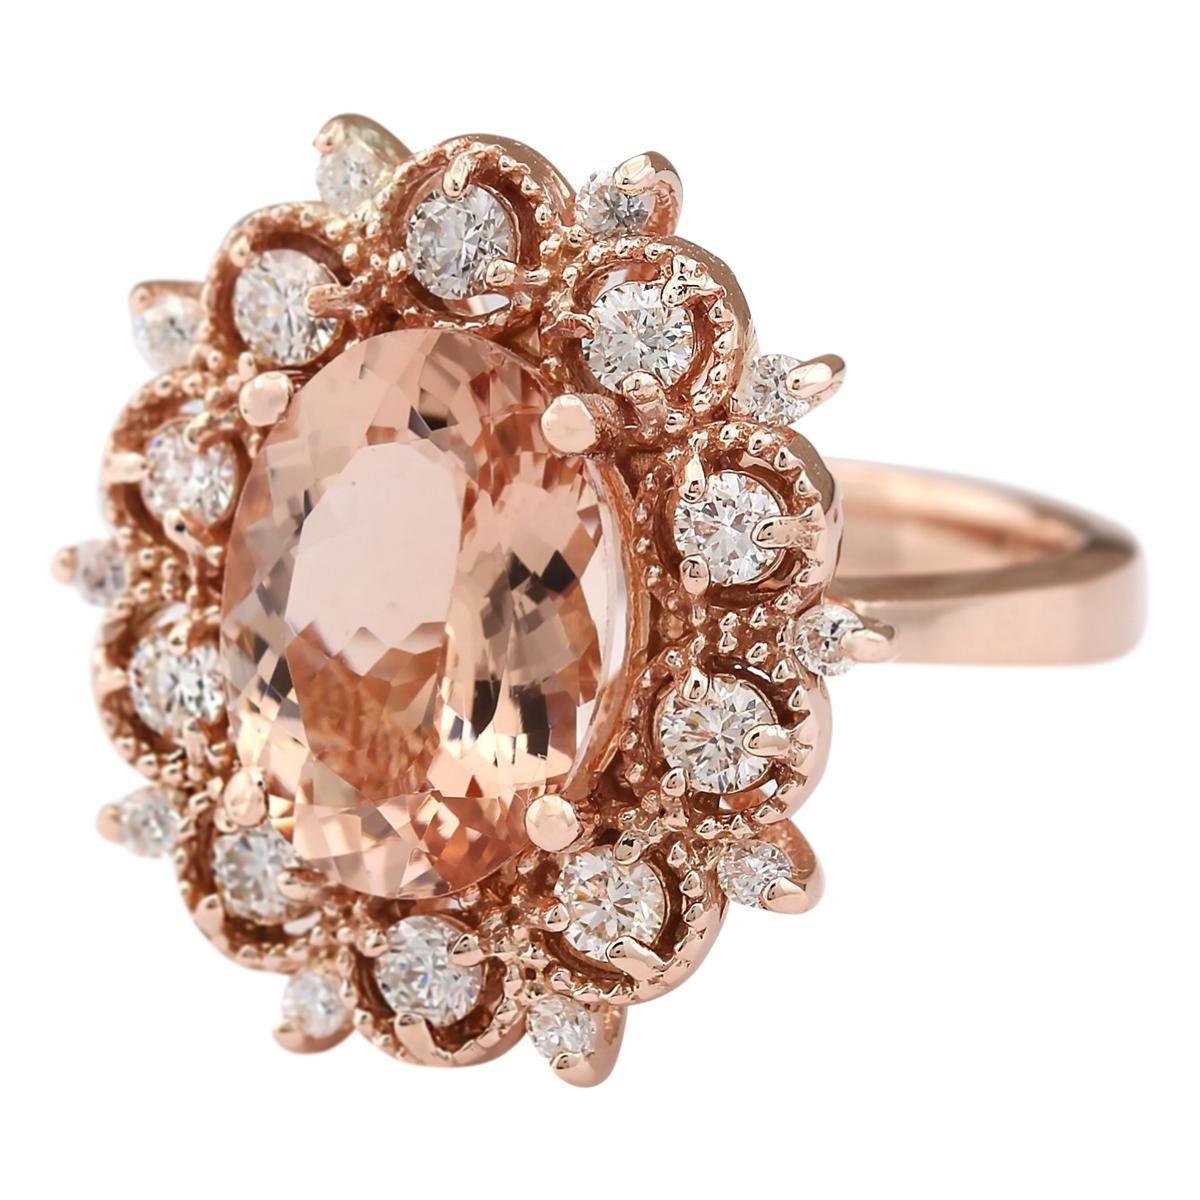 4.58 Carat Natural Morganite 14 Karat Rose Gold Diamond Ring
Stamped: 14K Rose Gold
Total Ring Weight: 8.2 Grams
Total Natural Morganite Weight is 3.73 Carat (Measures: 12.00x10.00 mm)
Color: Peach
Total Natural Diamond Weight is 0.85 Carat
Color: